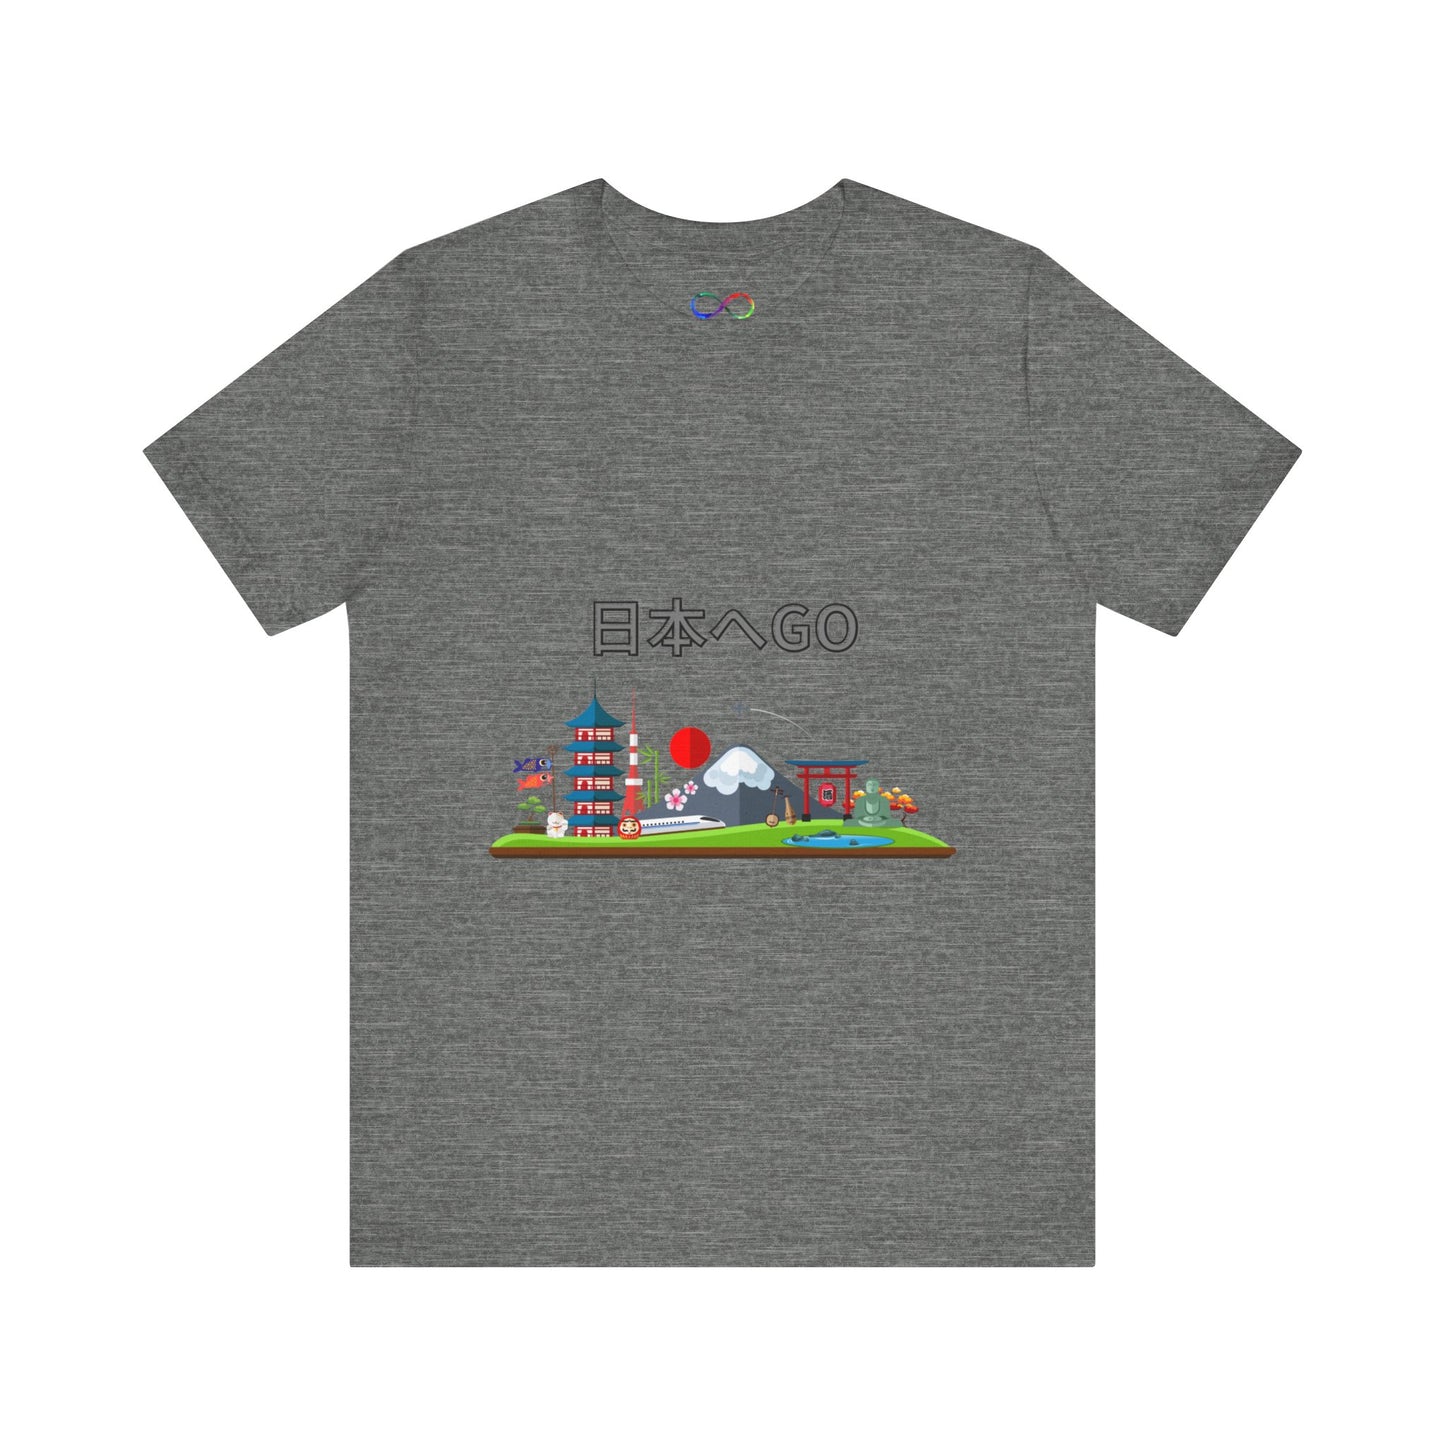 Go Japan t-shirt